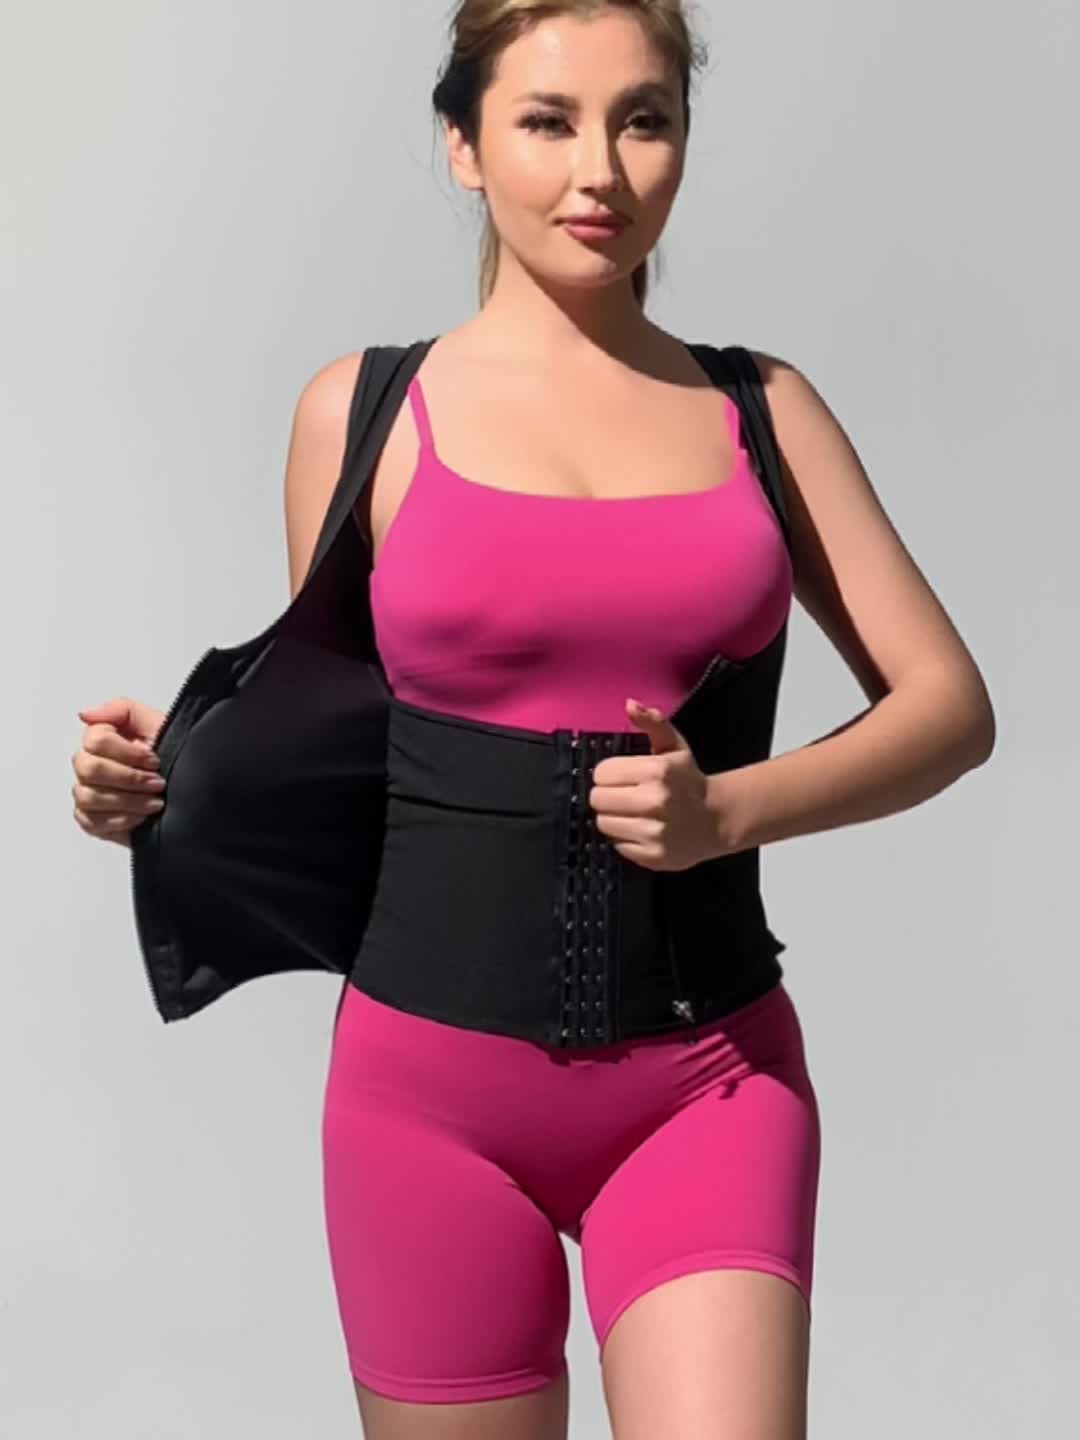 Women Fitness Hot Shapers Sauna Activewear Vest Waist Trainer